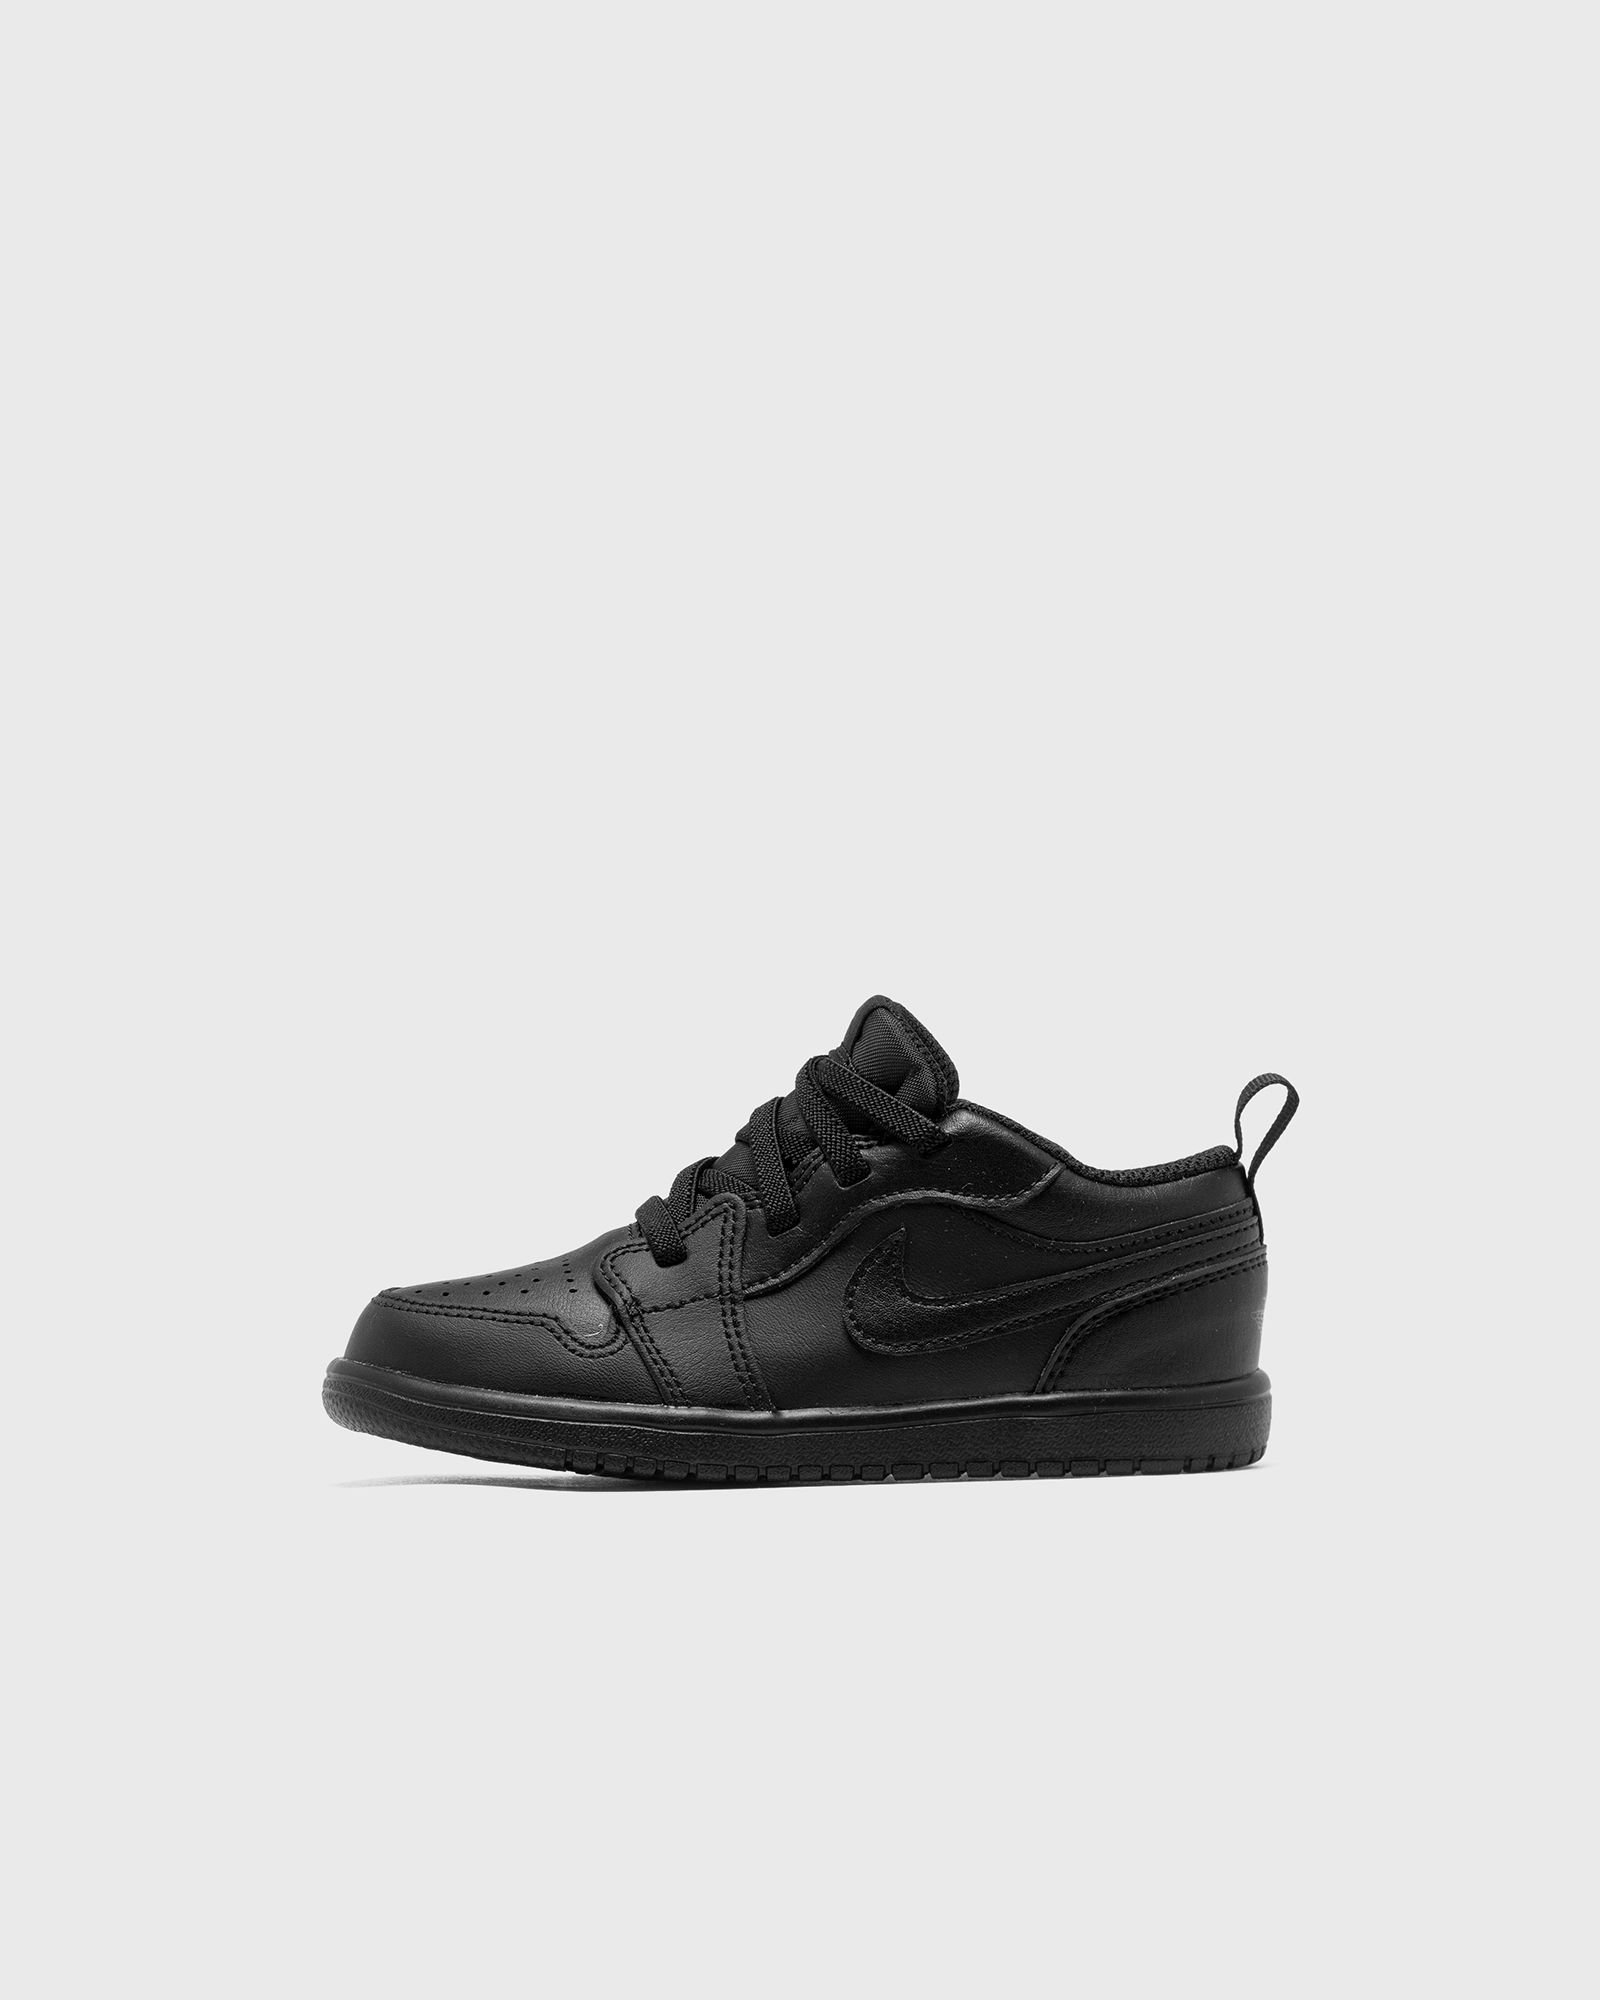 Jordan - 1 low alt (td)  sneakers black in größe:27